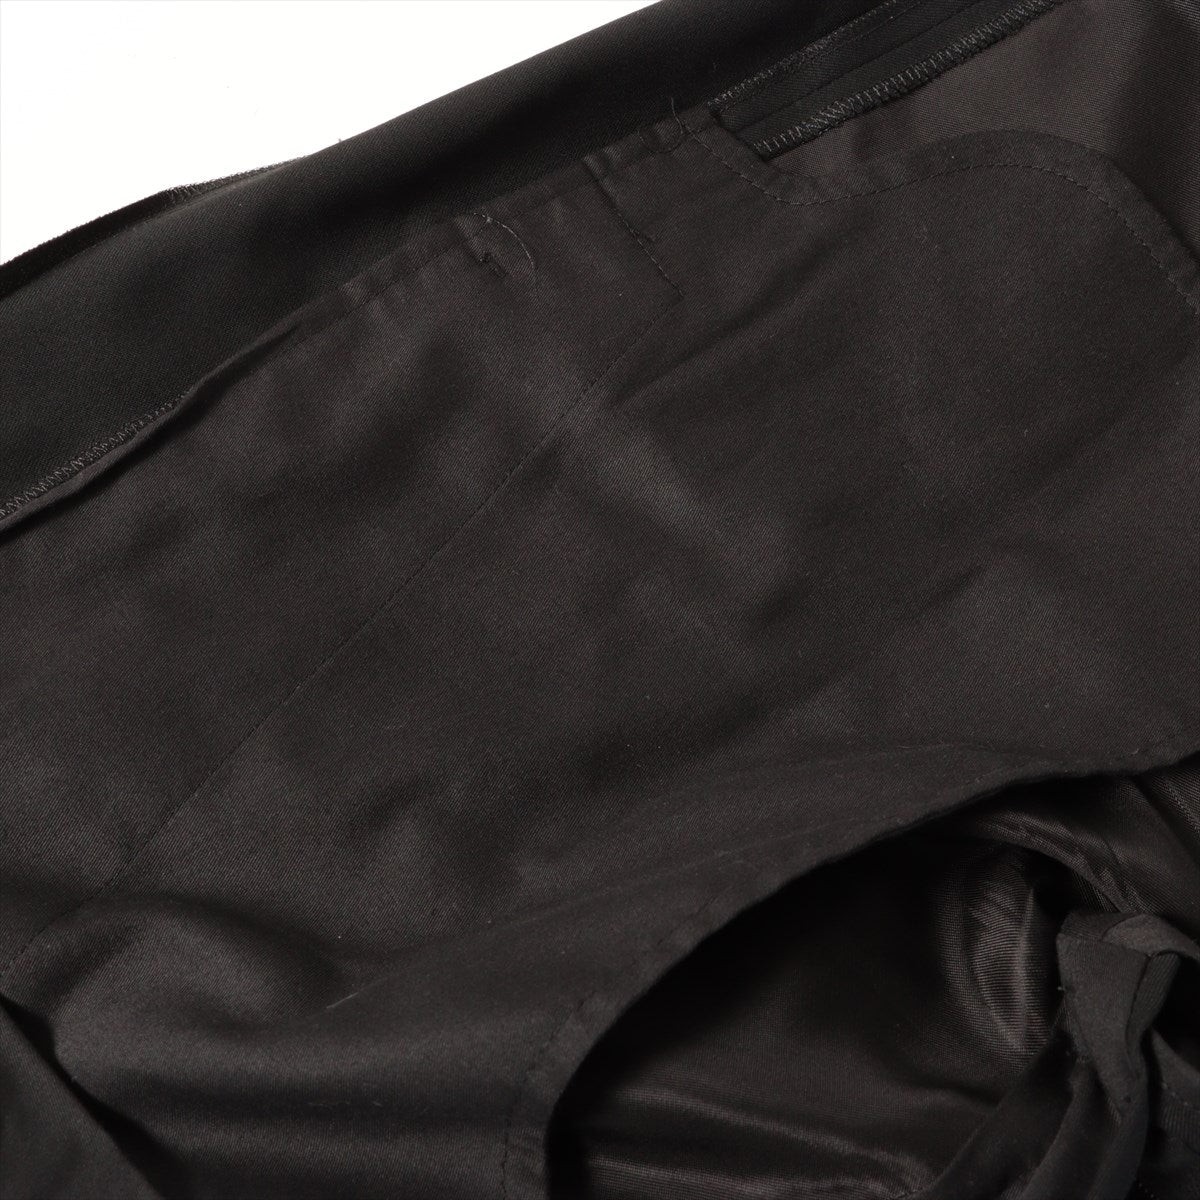 ディオール×カクタスジャック ウール パンツ 48 メンズ ブラック  283C102A4739 ファミリーセール品 裾補修